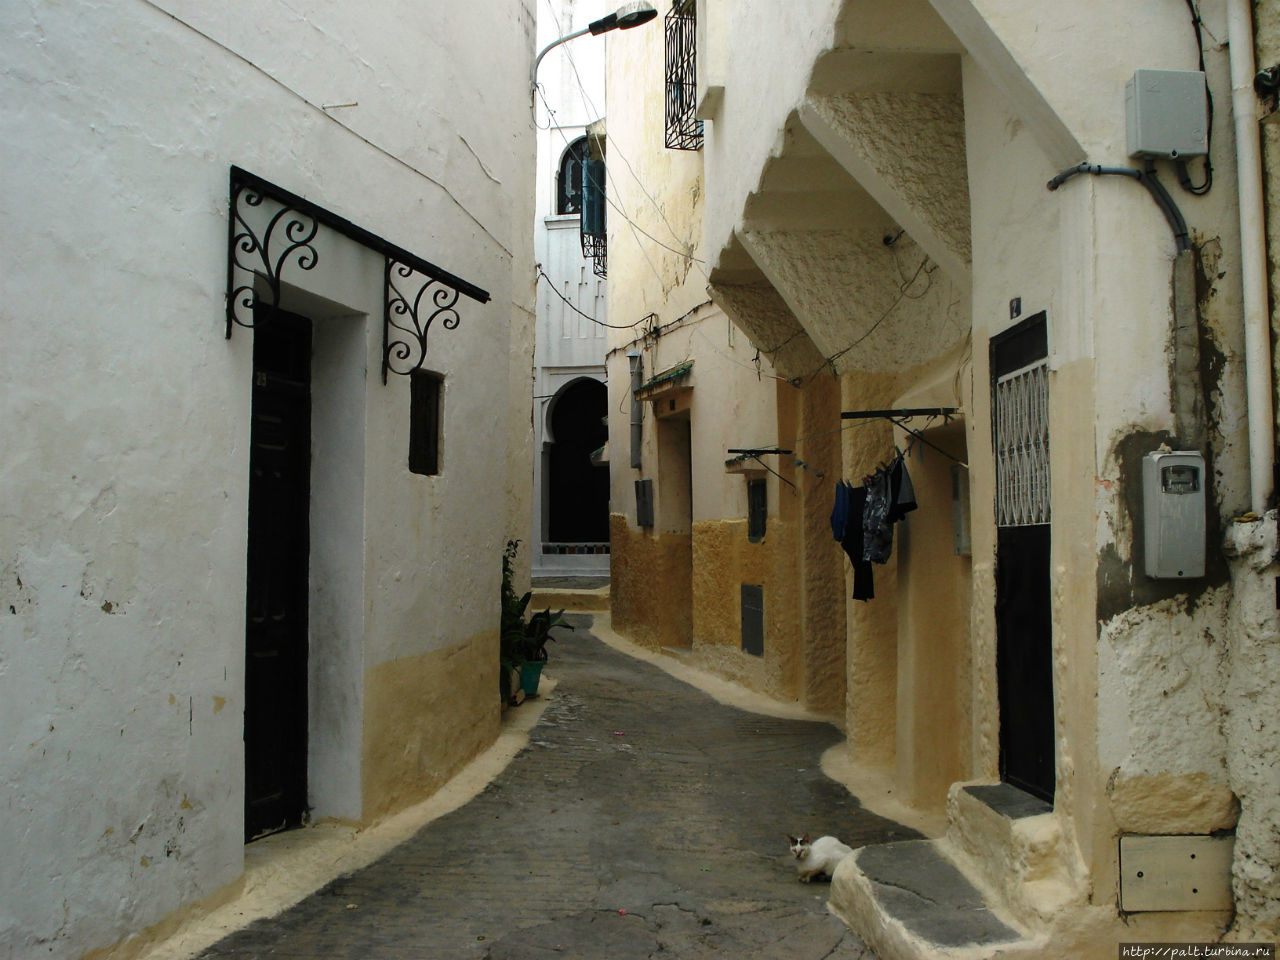 Танжер. Возвращение на чуть-чуть в организованный туризм Танжер, Марокко